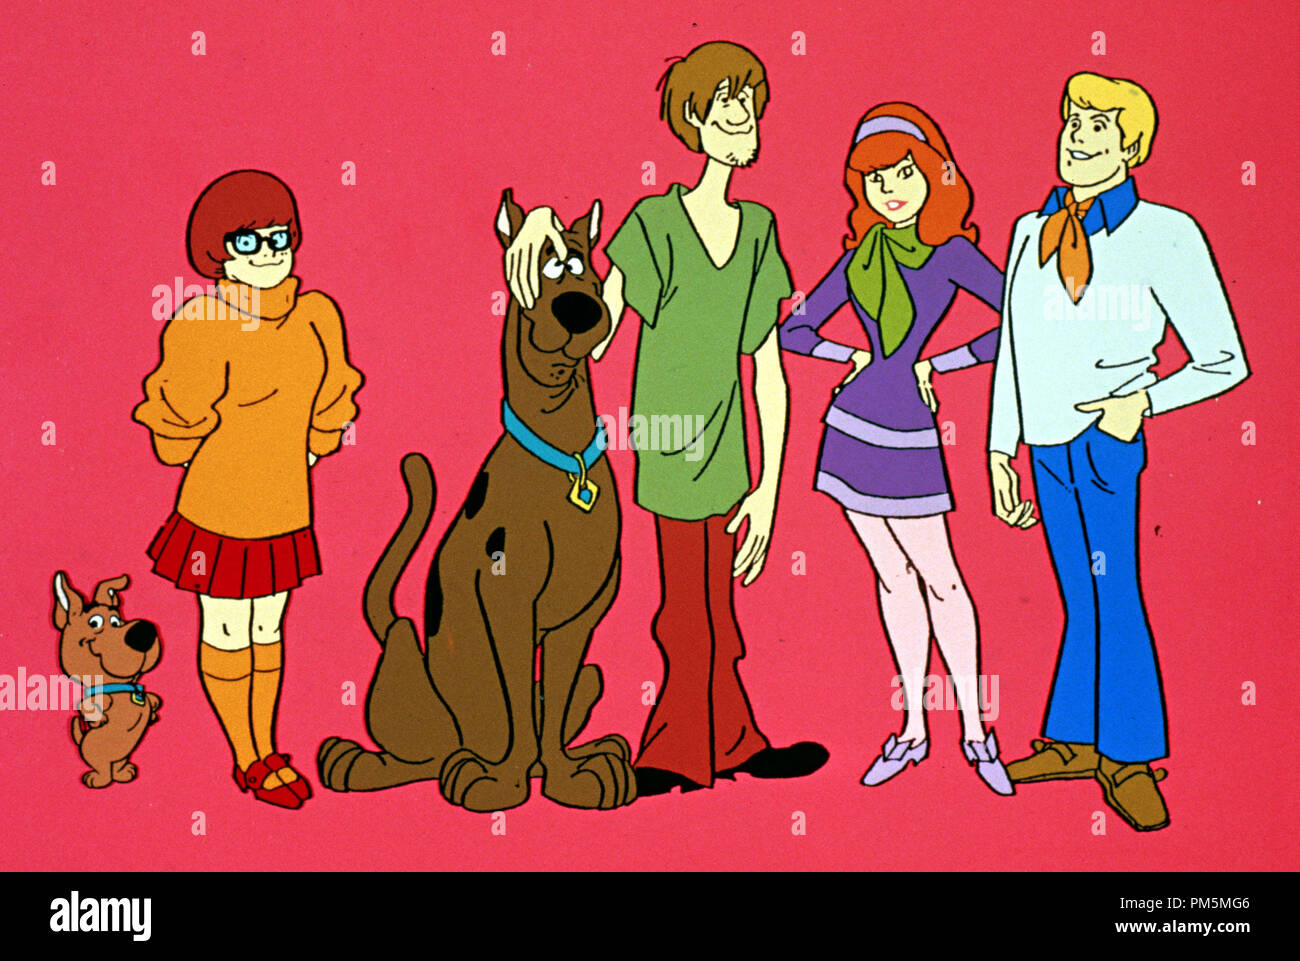 Scooby doo daphne immagini e fotografie stock ad alta risoluzione - Alamy